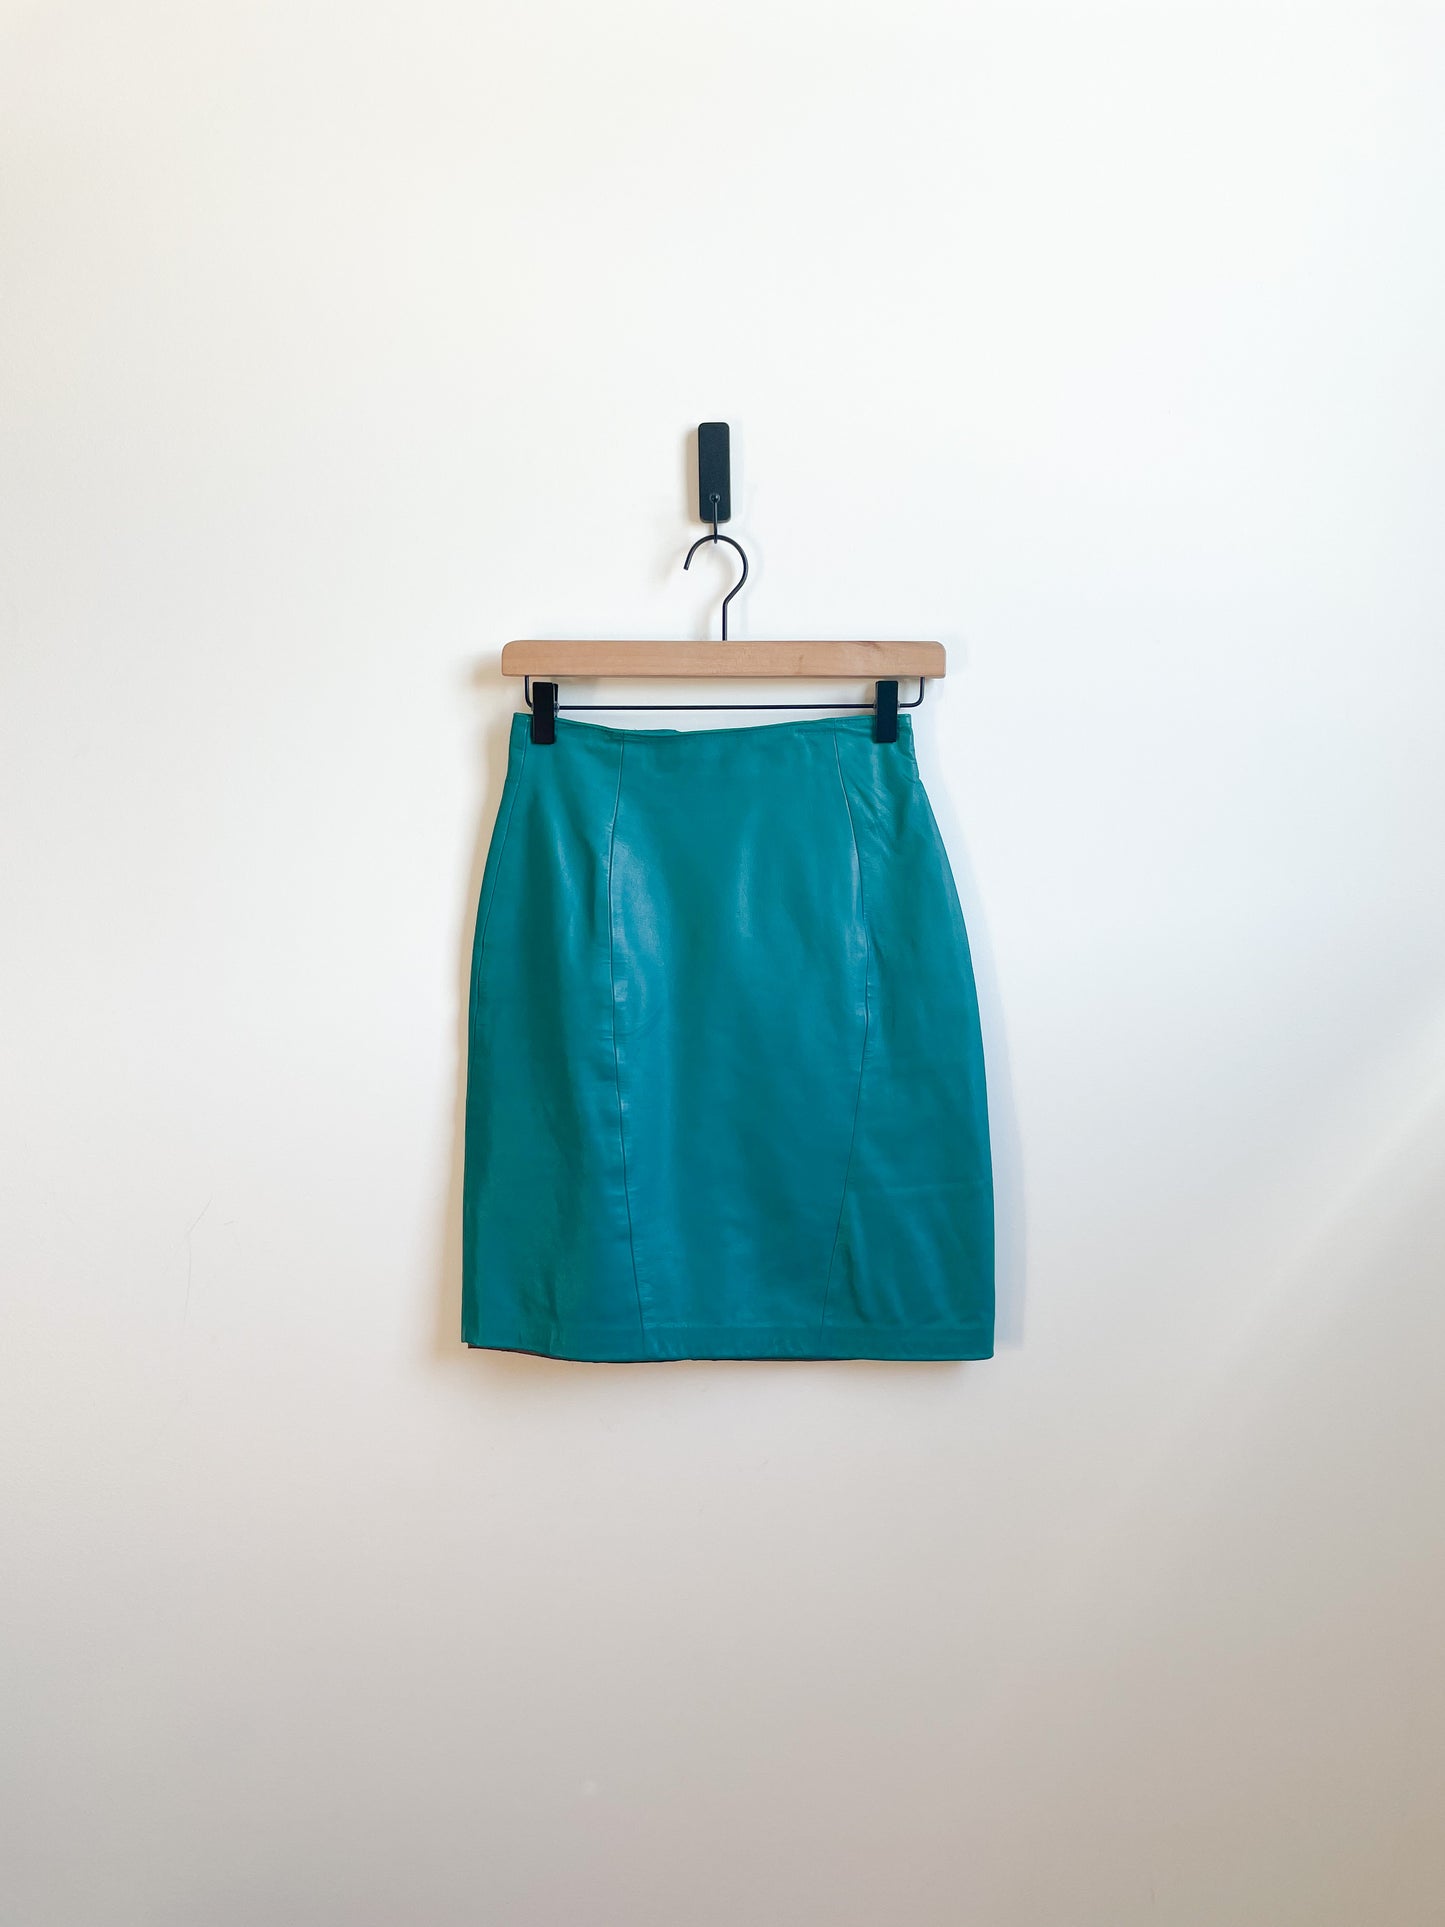 Vintage Teal Leather Skirt